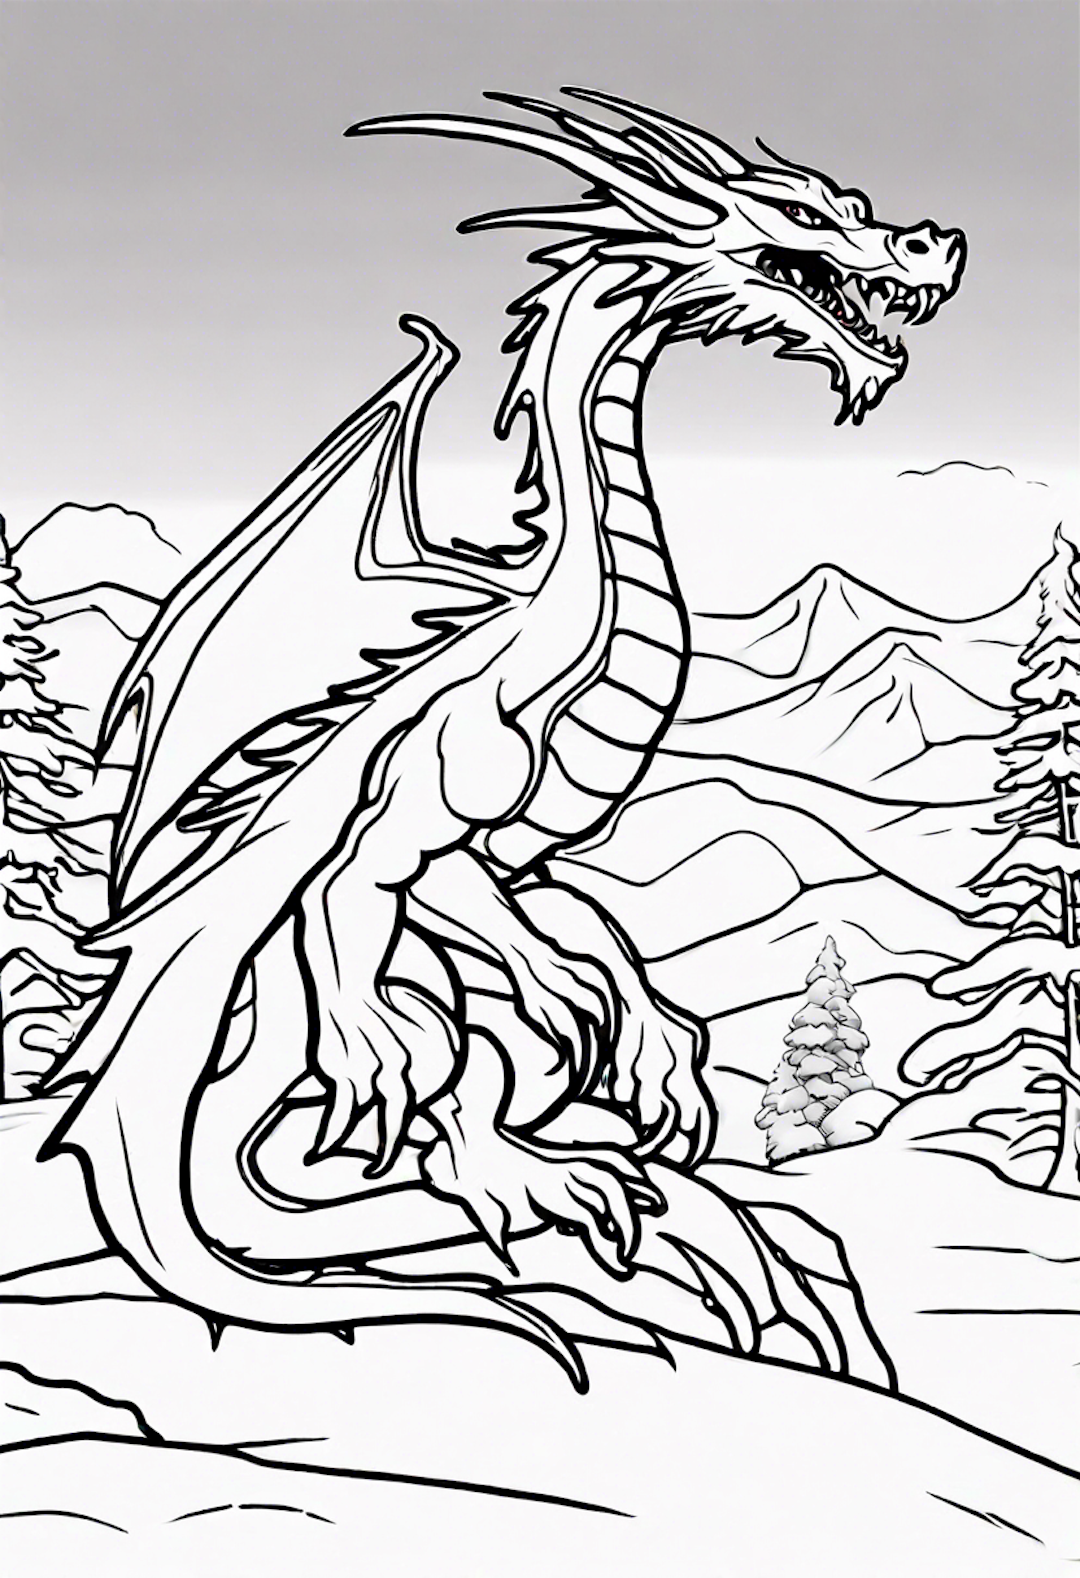 Dragon In A Calm Winter Landscape